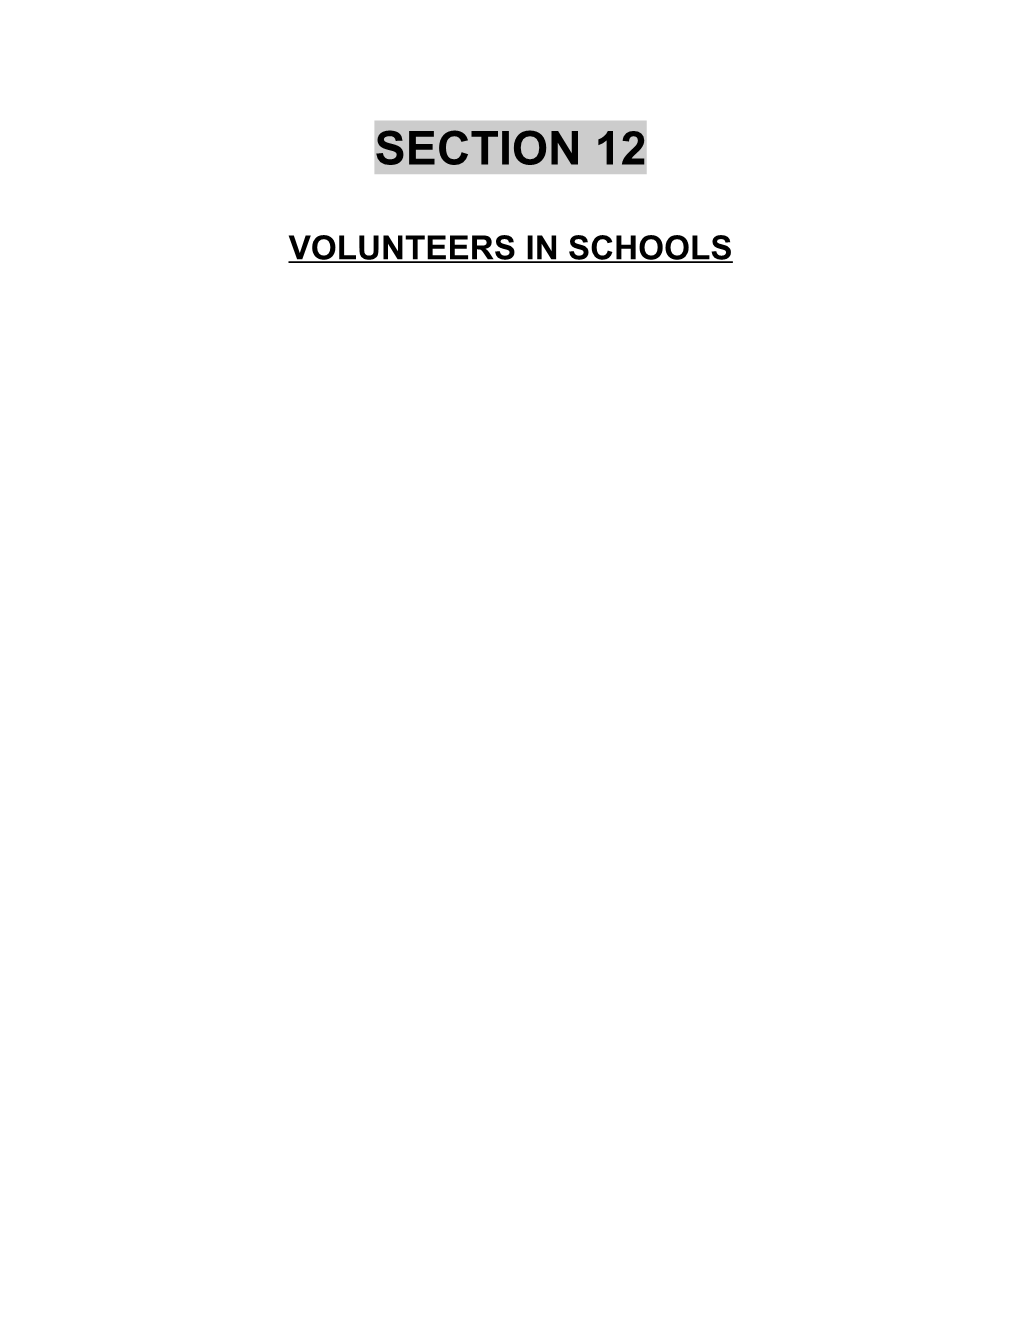 Volunteers in Schools